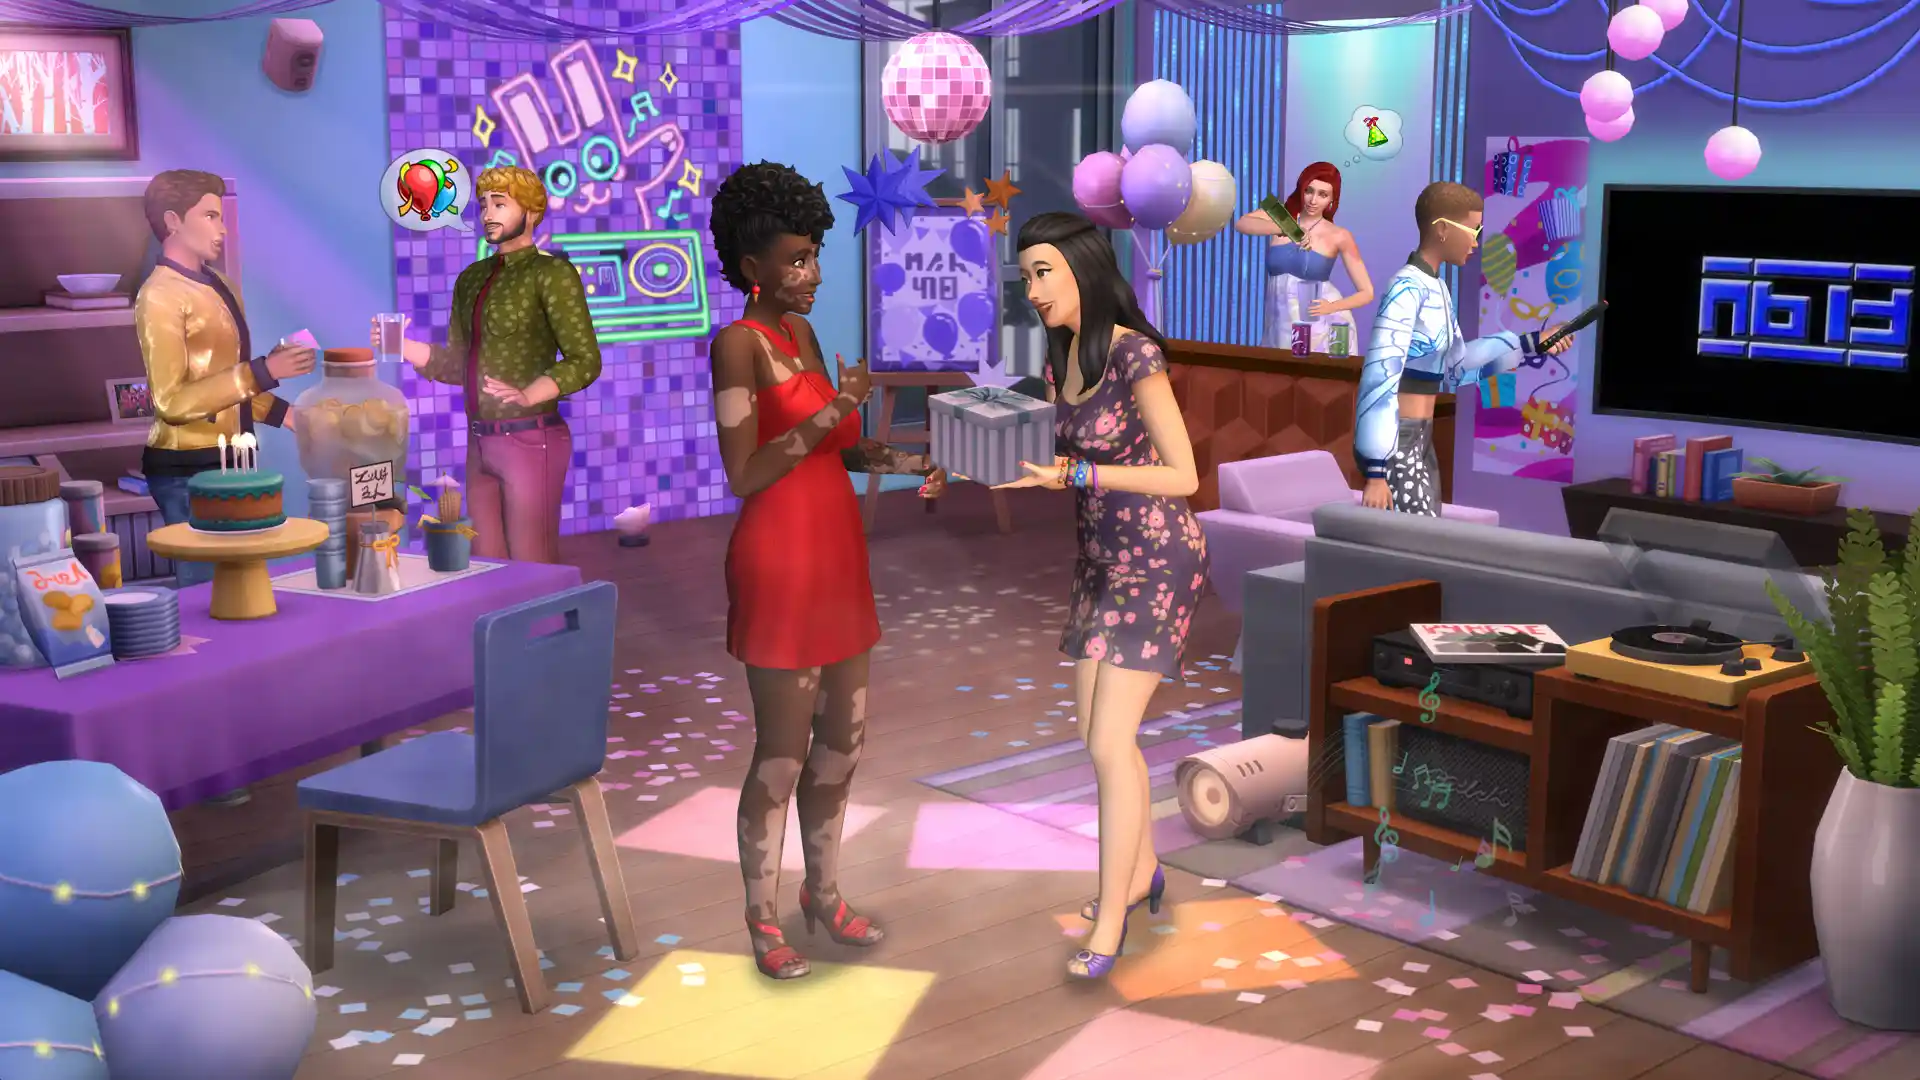 The Sims 4 Omaggio Urbano Kit e The Sims 4 Feste da Manuale Kit sono disponibili ora: tutti i dettagli